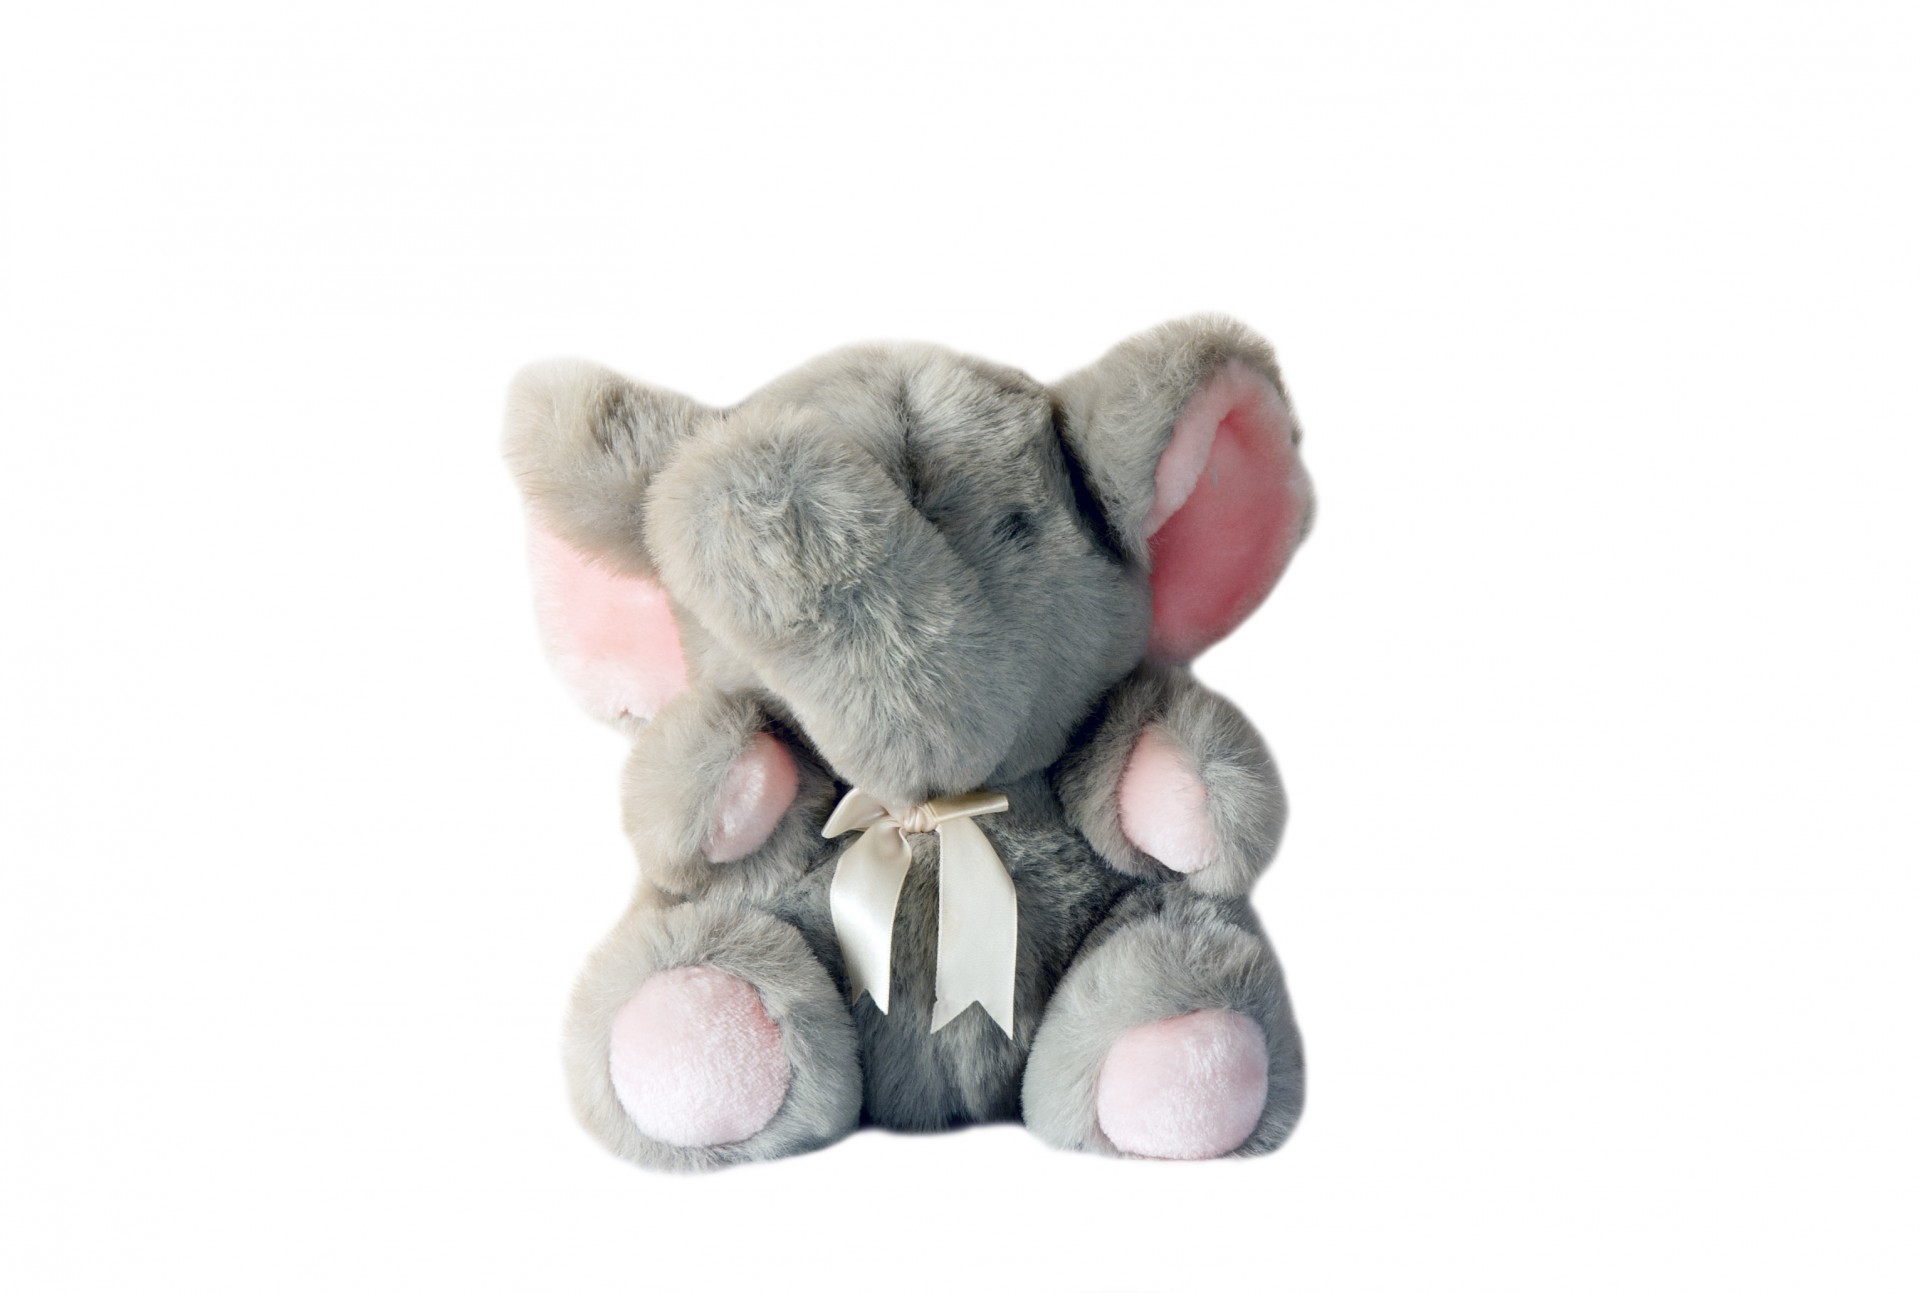 Cute soft plush toy elephant isolated on white background